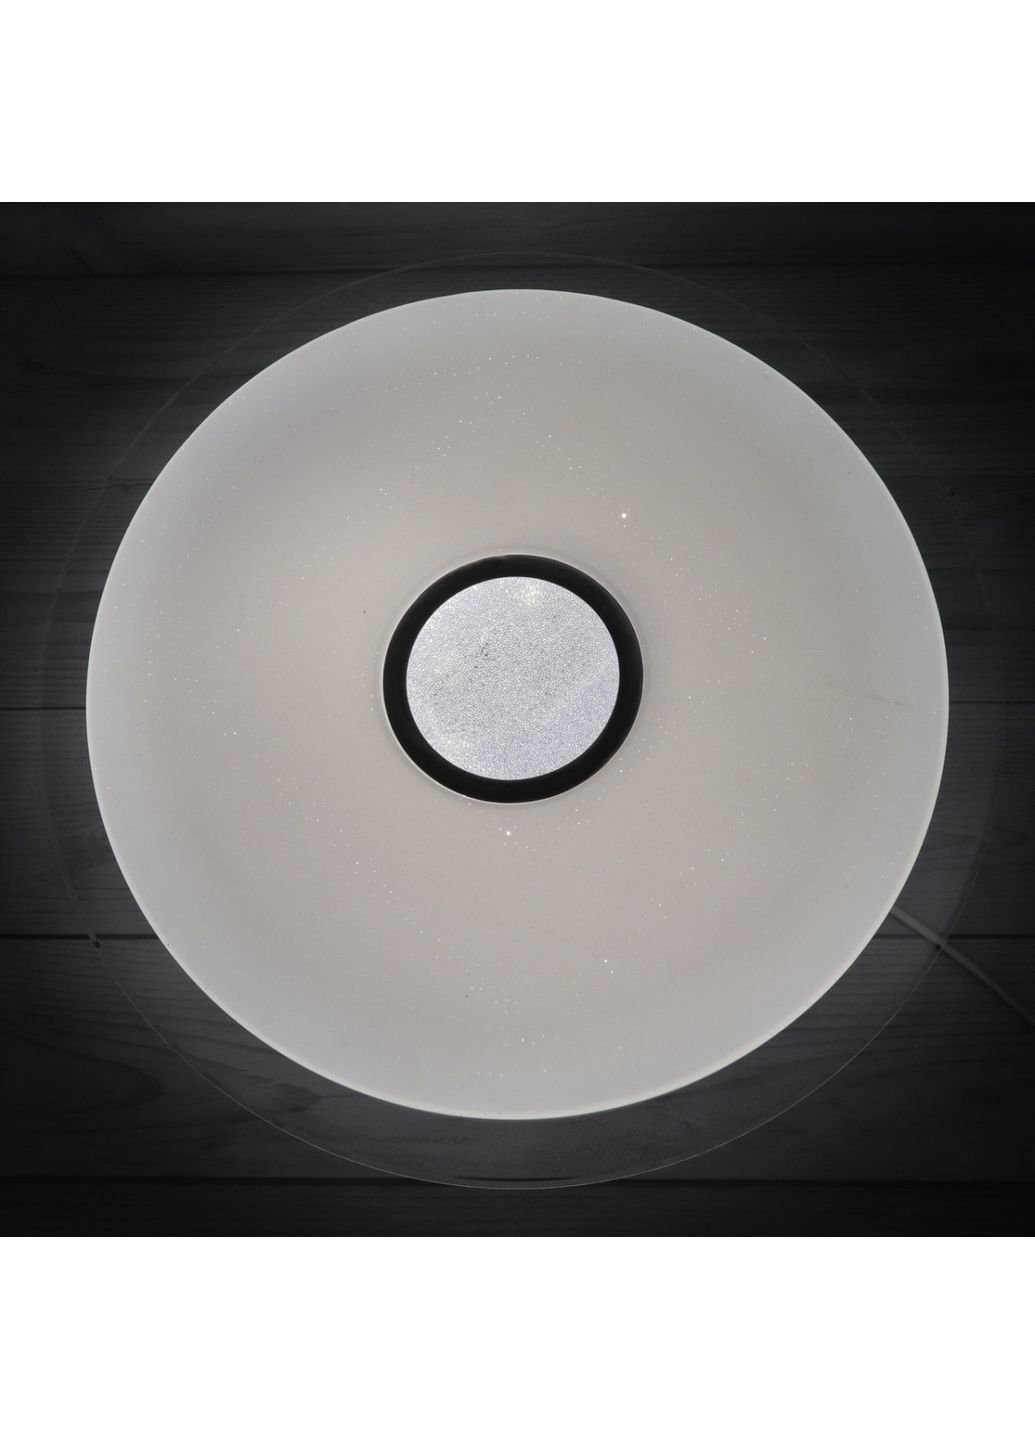 Светильник потолочный LED W8122/450 Белый 5х56х56 см. Sunnysky (253542238)